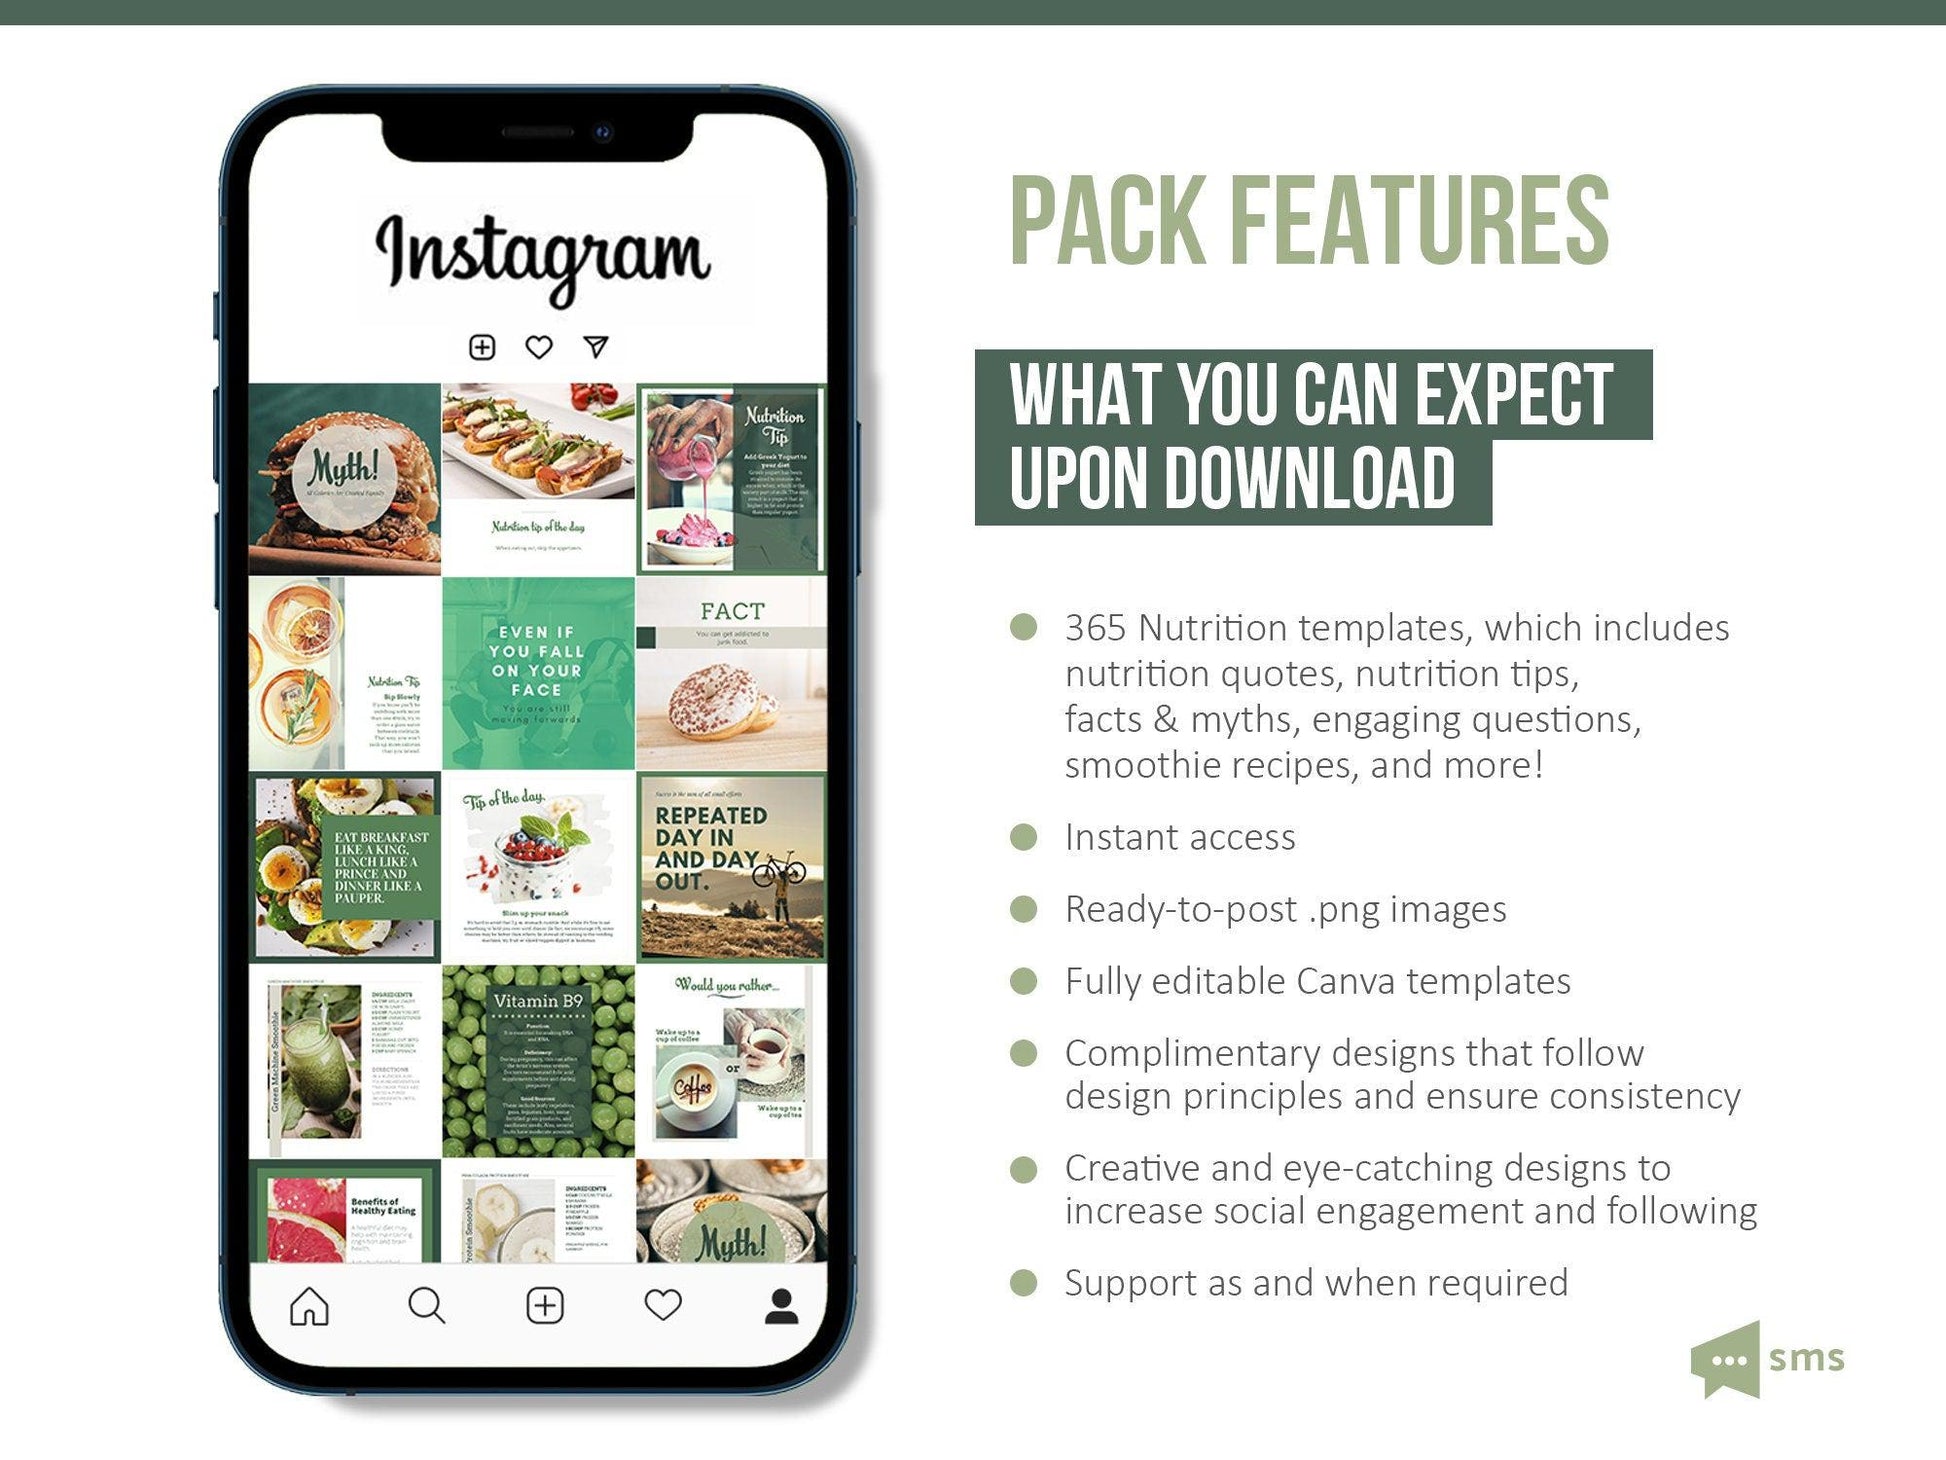 365 Nutrition Instagram Template Bundle For Social Media (olive)